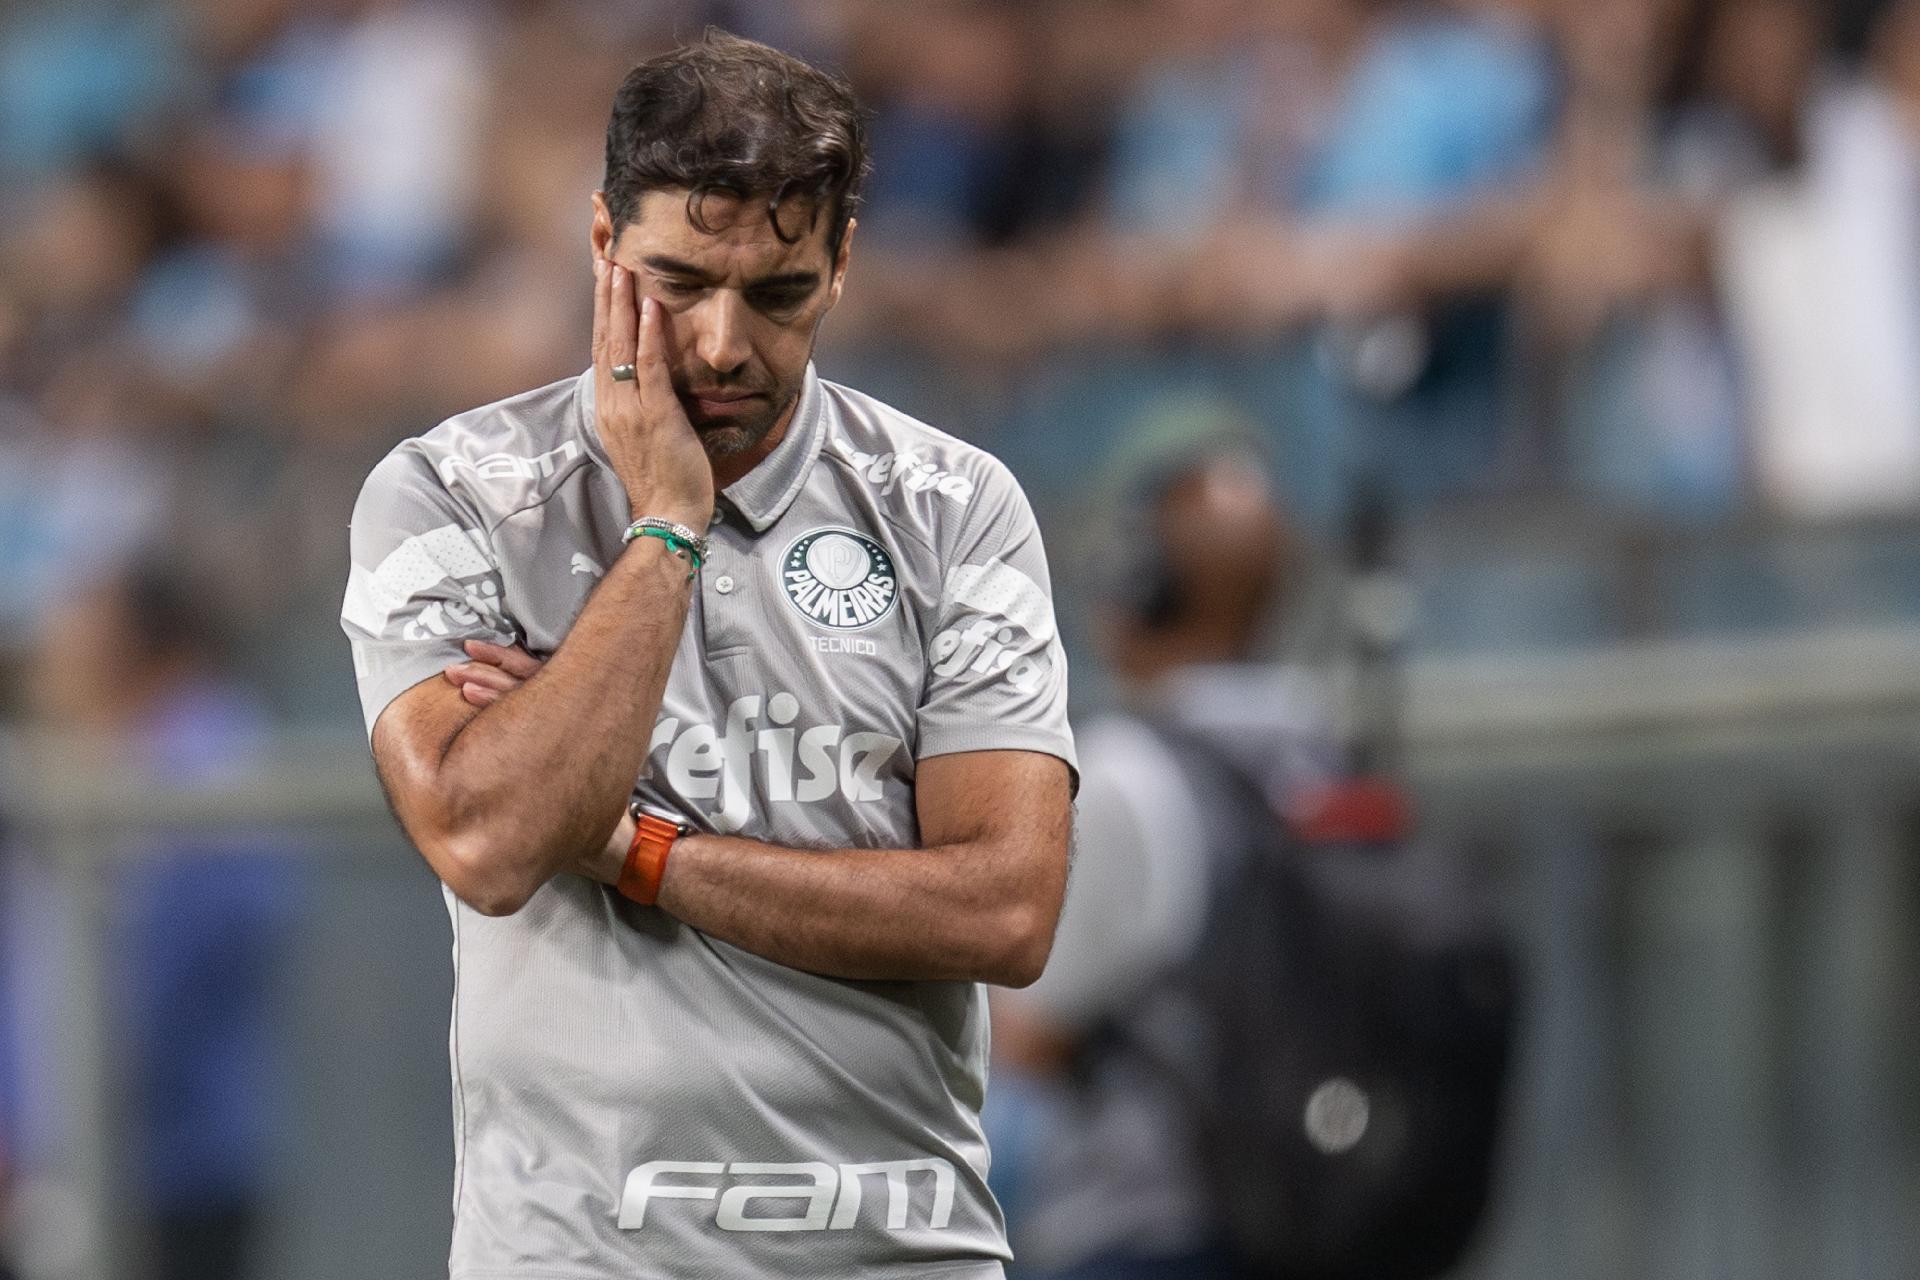 Atacante se despede de clube colombiano rumo ao Palmeiras; veja